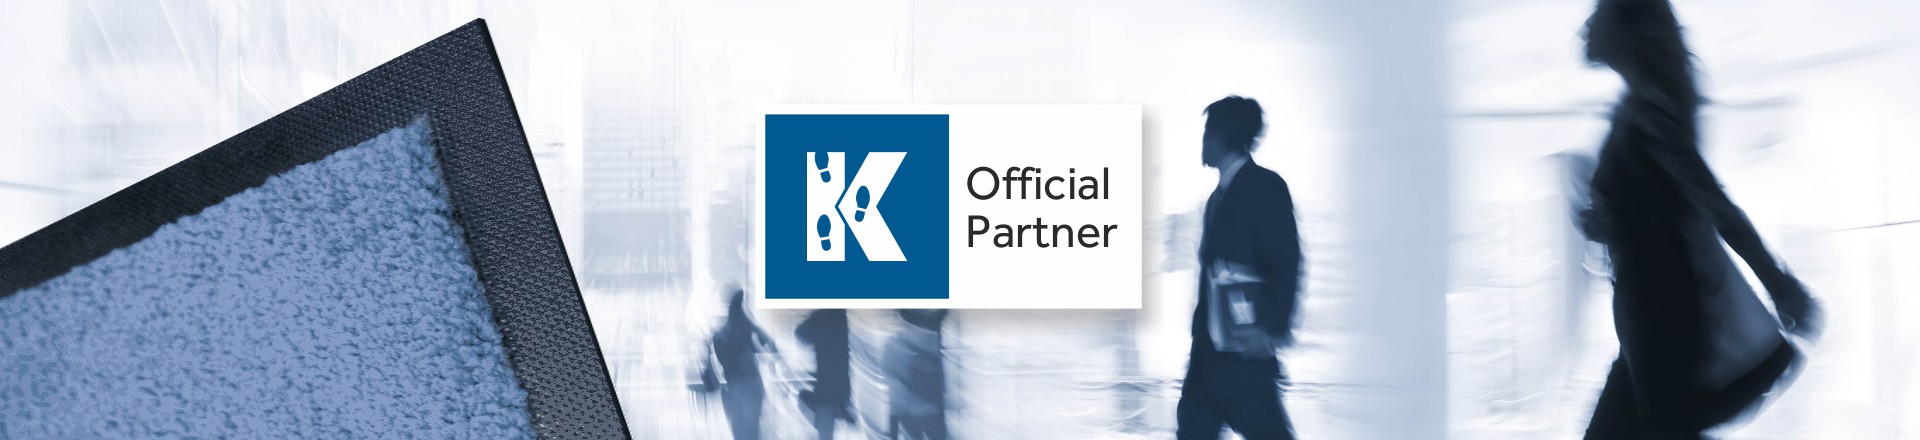 Become An Official Kleen-Tex Partner